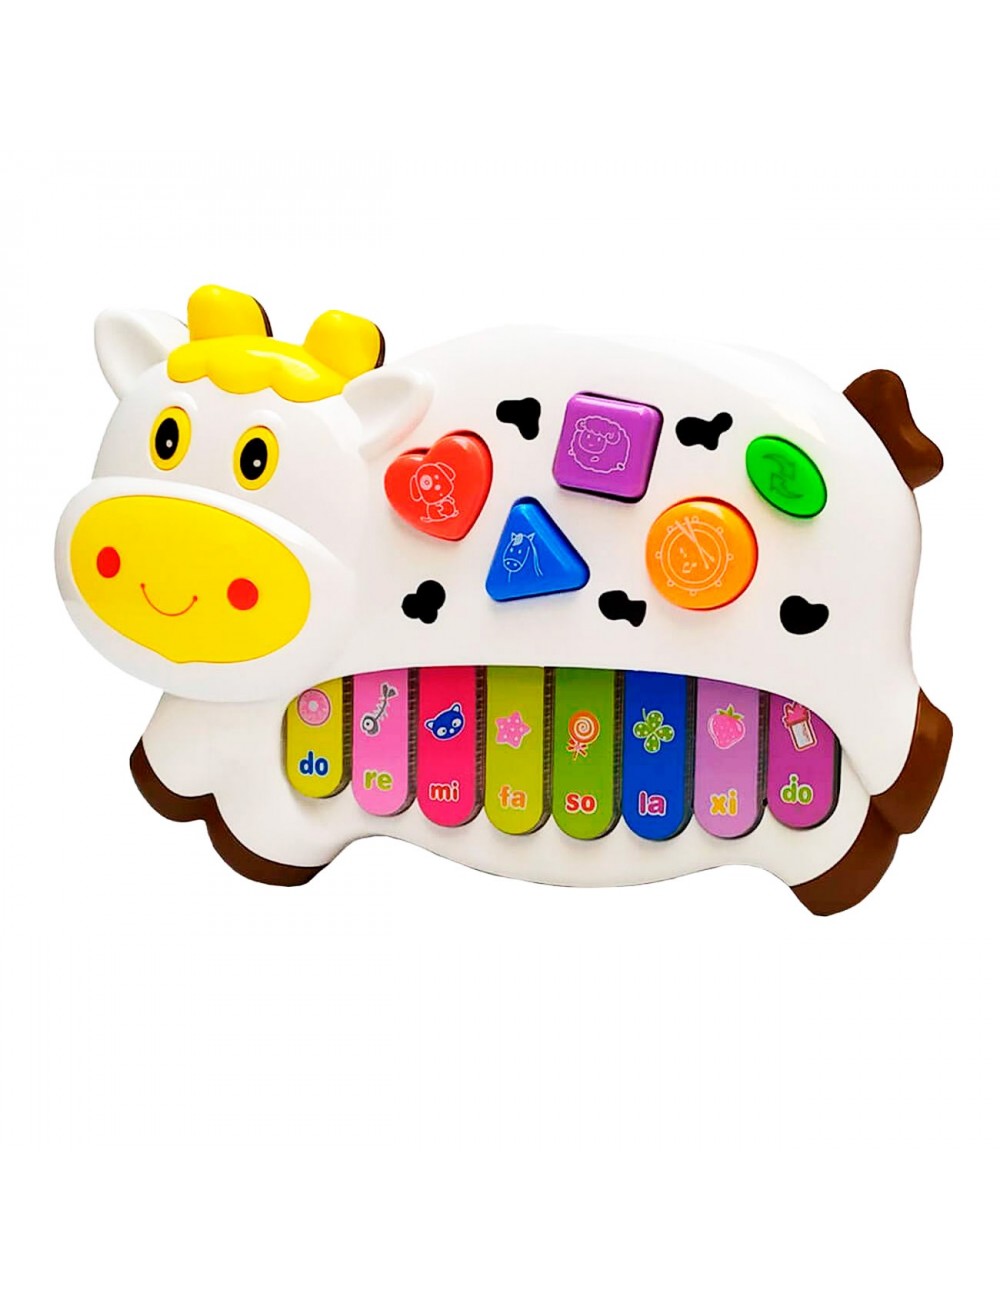 Piano Musical interactivo en forma de vaca para Bebés.